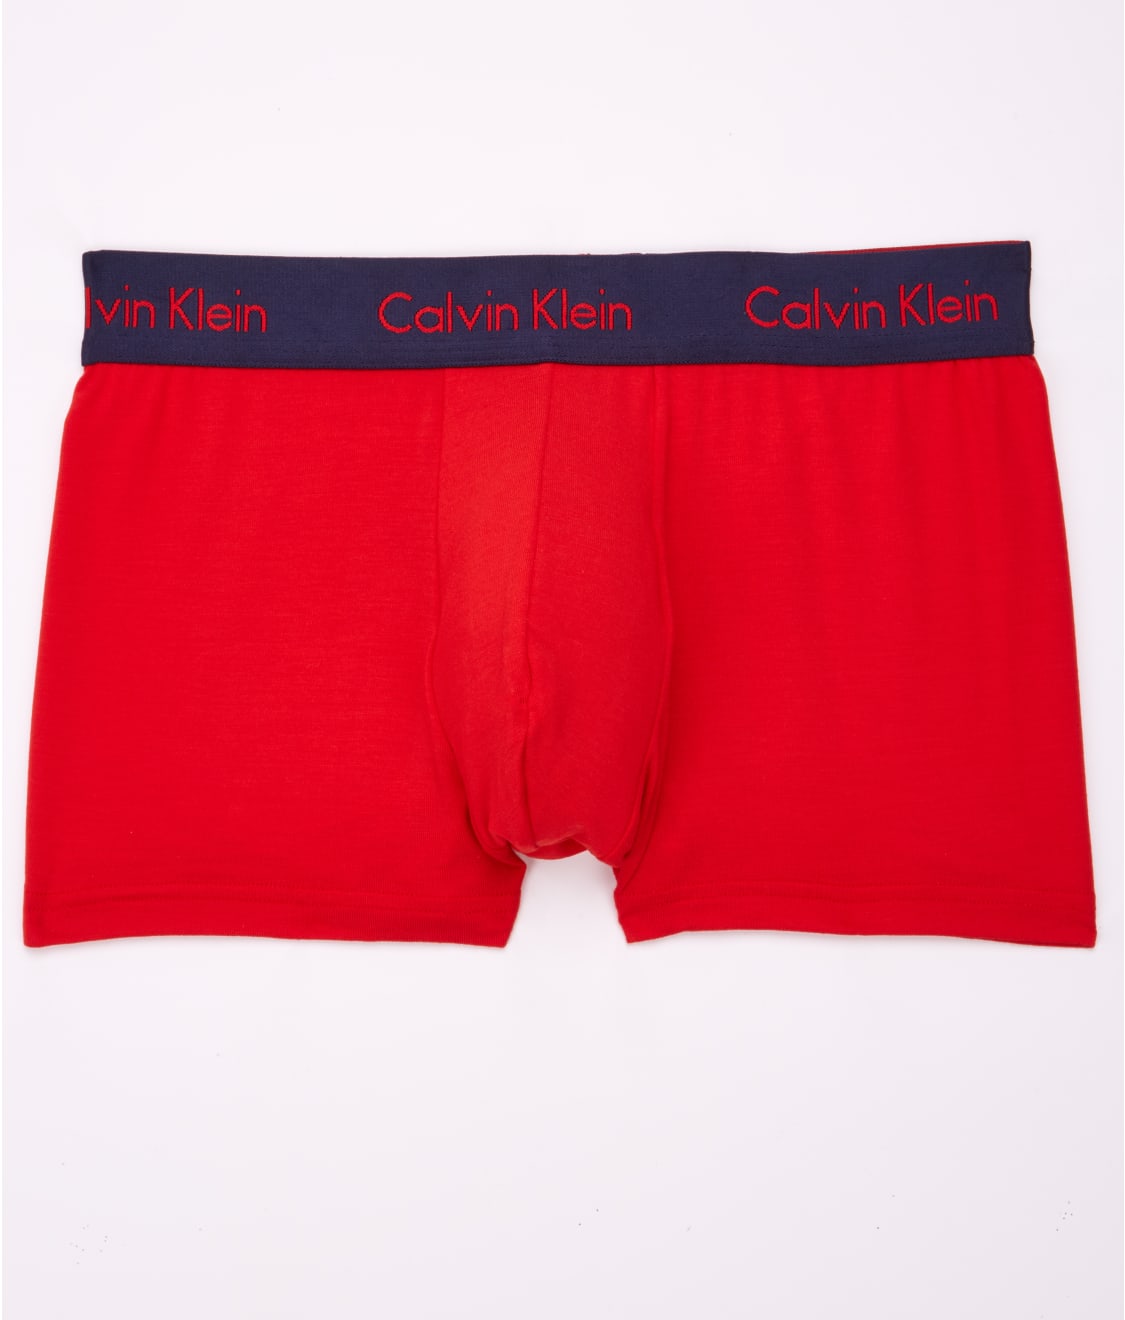 Calvin Klein Micro Modal Trunk & Reviews